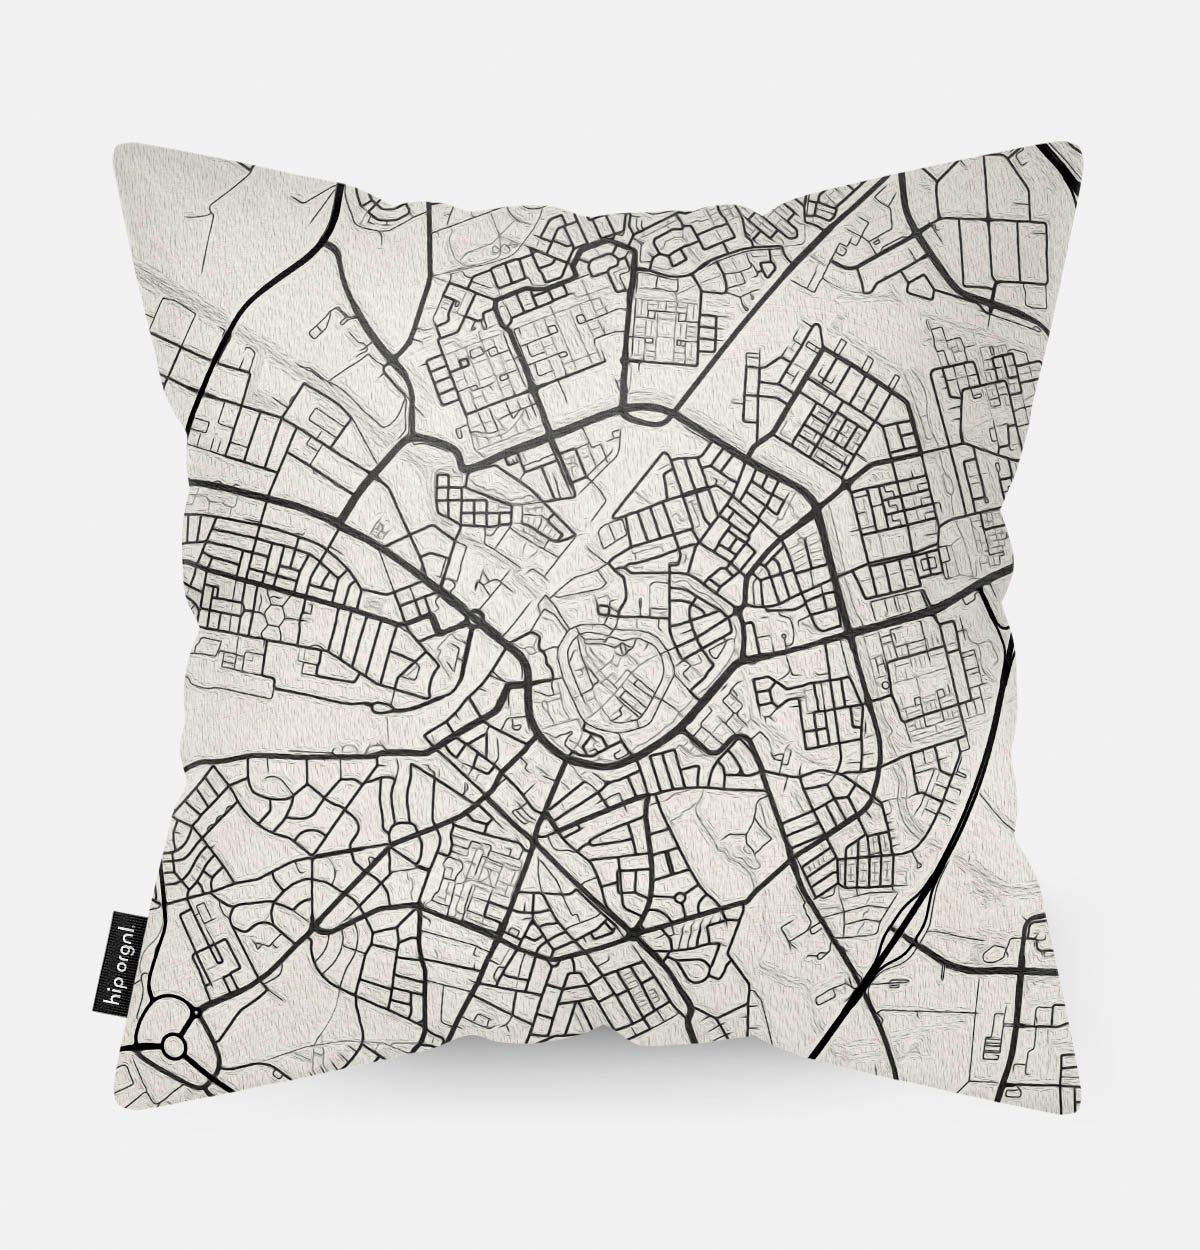 Achterzijde van sierkussen met kaart Amersfoort stad in zwart wit